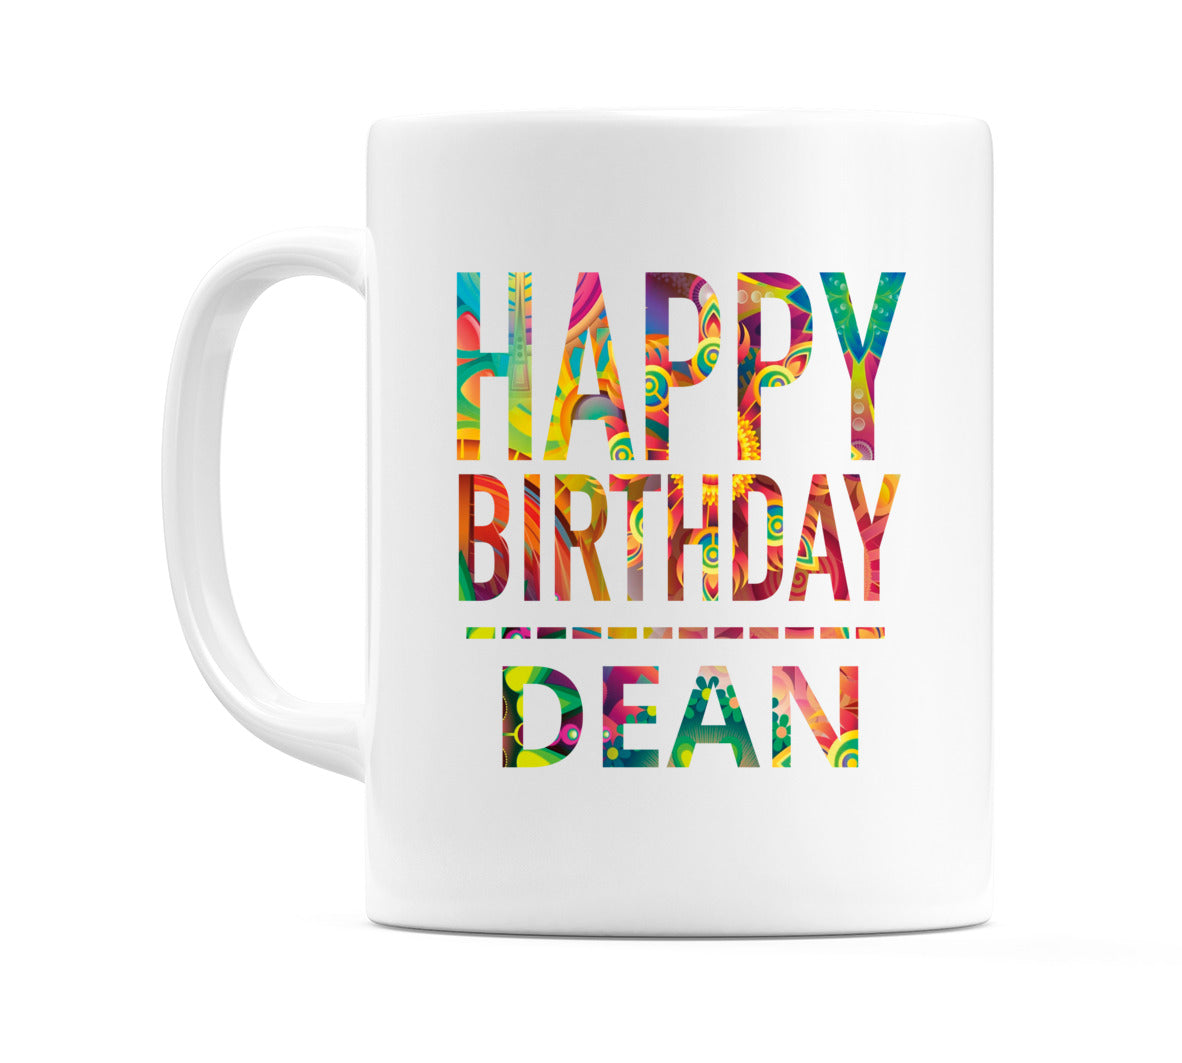 Happy Birthday Dean (Tie Dye Effect) Mug Cup by WeDoMugs